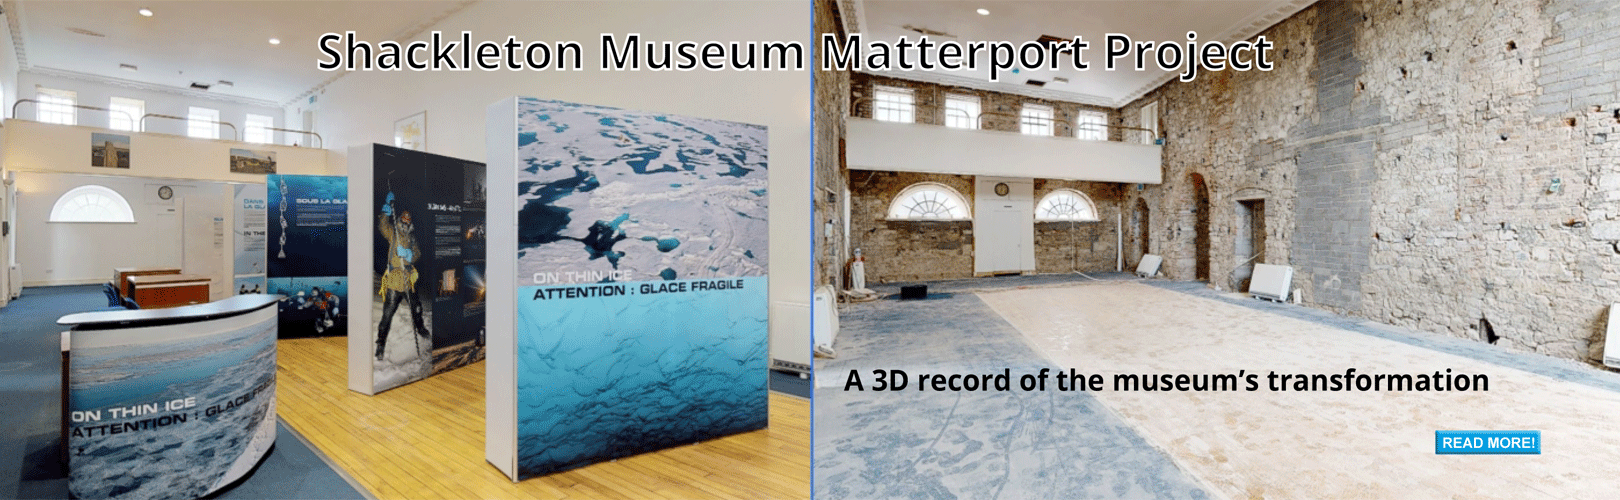 shackleton-museum-matterport-3d-virtual-tour-stages-comparison-V1-1-1620x500